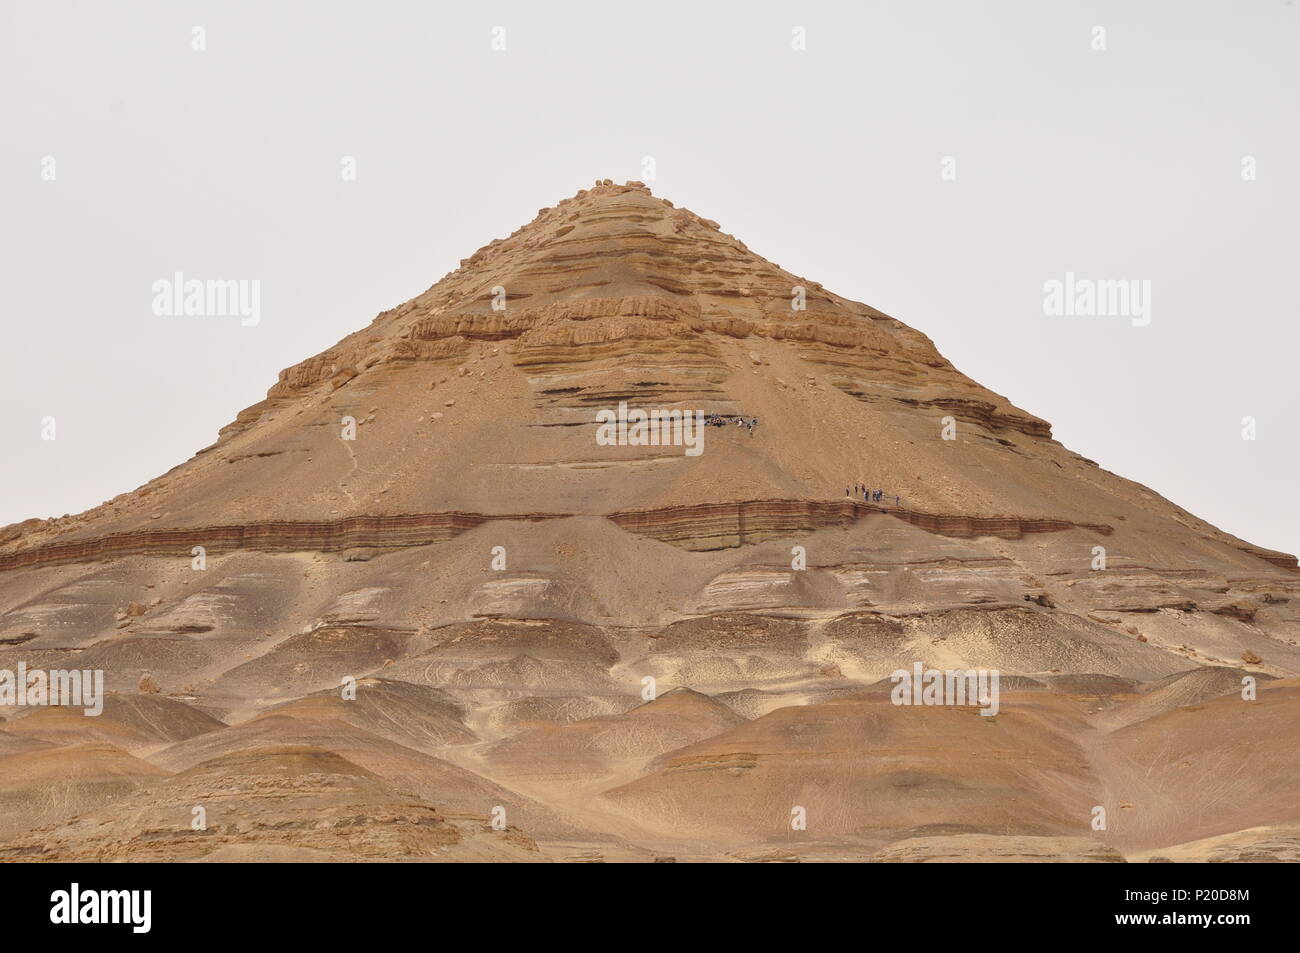 Al-Dist hill ; une forme de pyramide hill (172m de haut) qui est formée de roches sédimentaires, dans l'oasis de Bahariya, désert de l'Ouest, l'Egypte. Banque D'Images